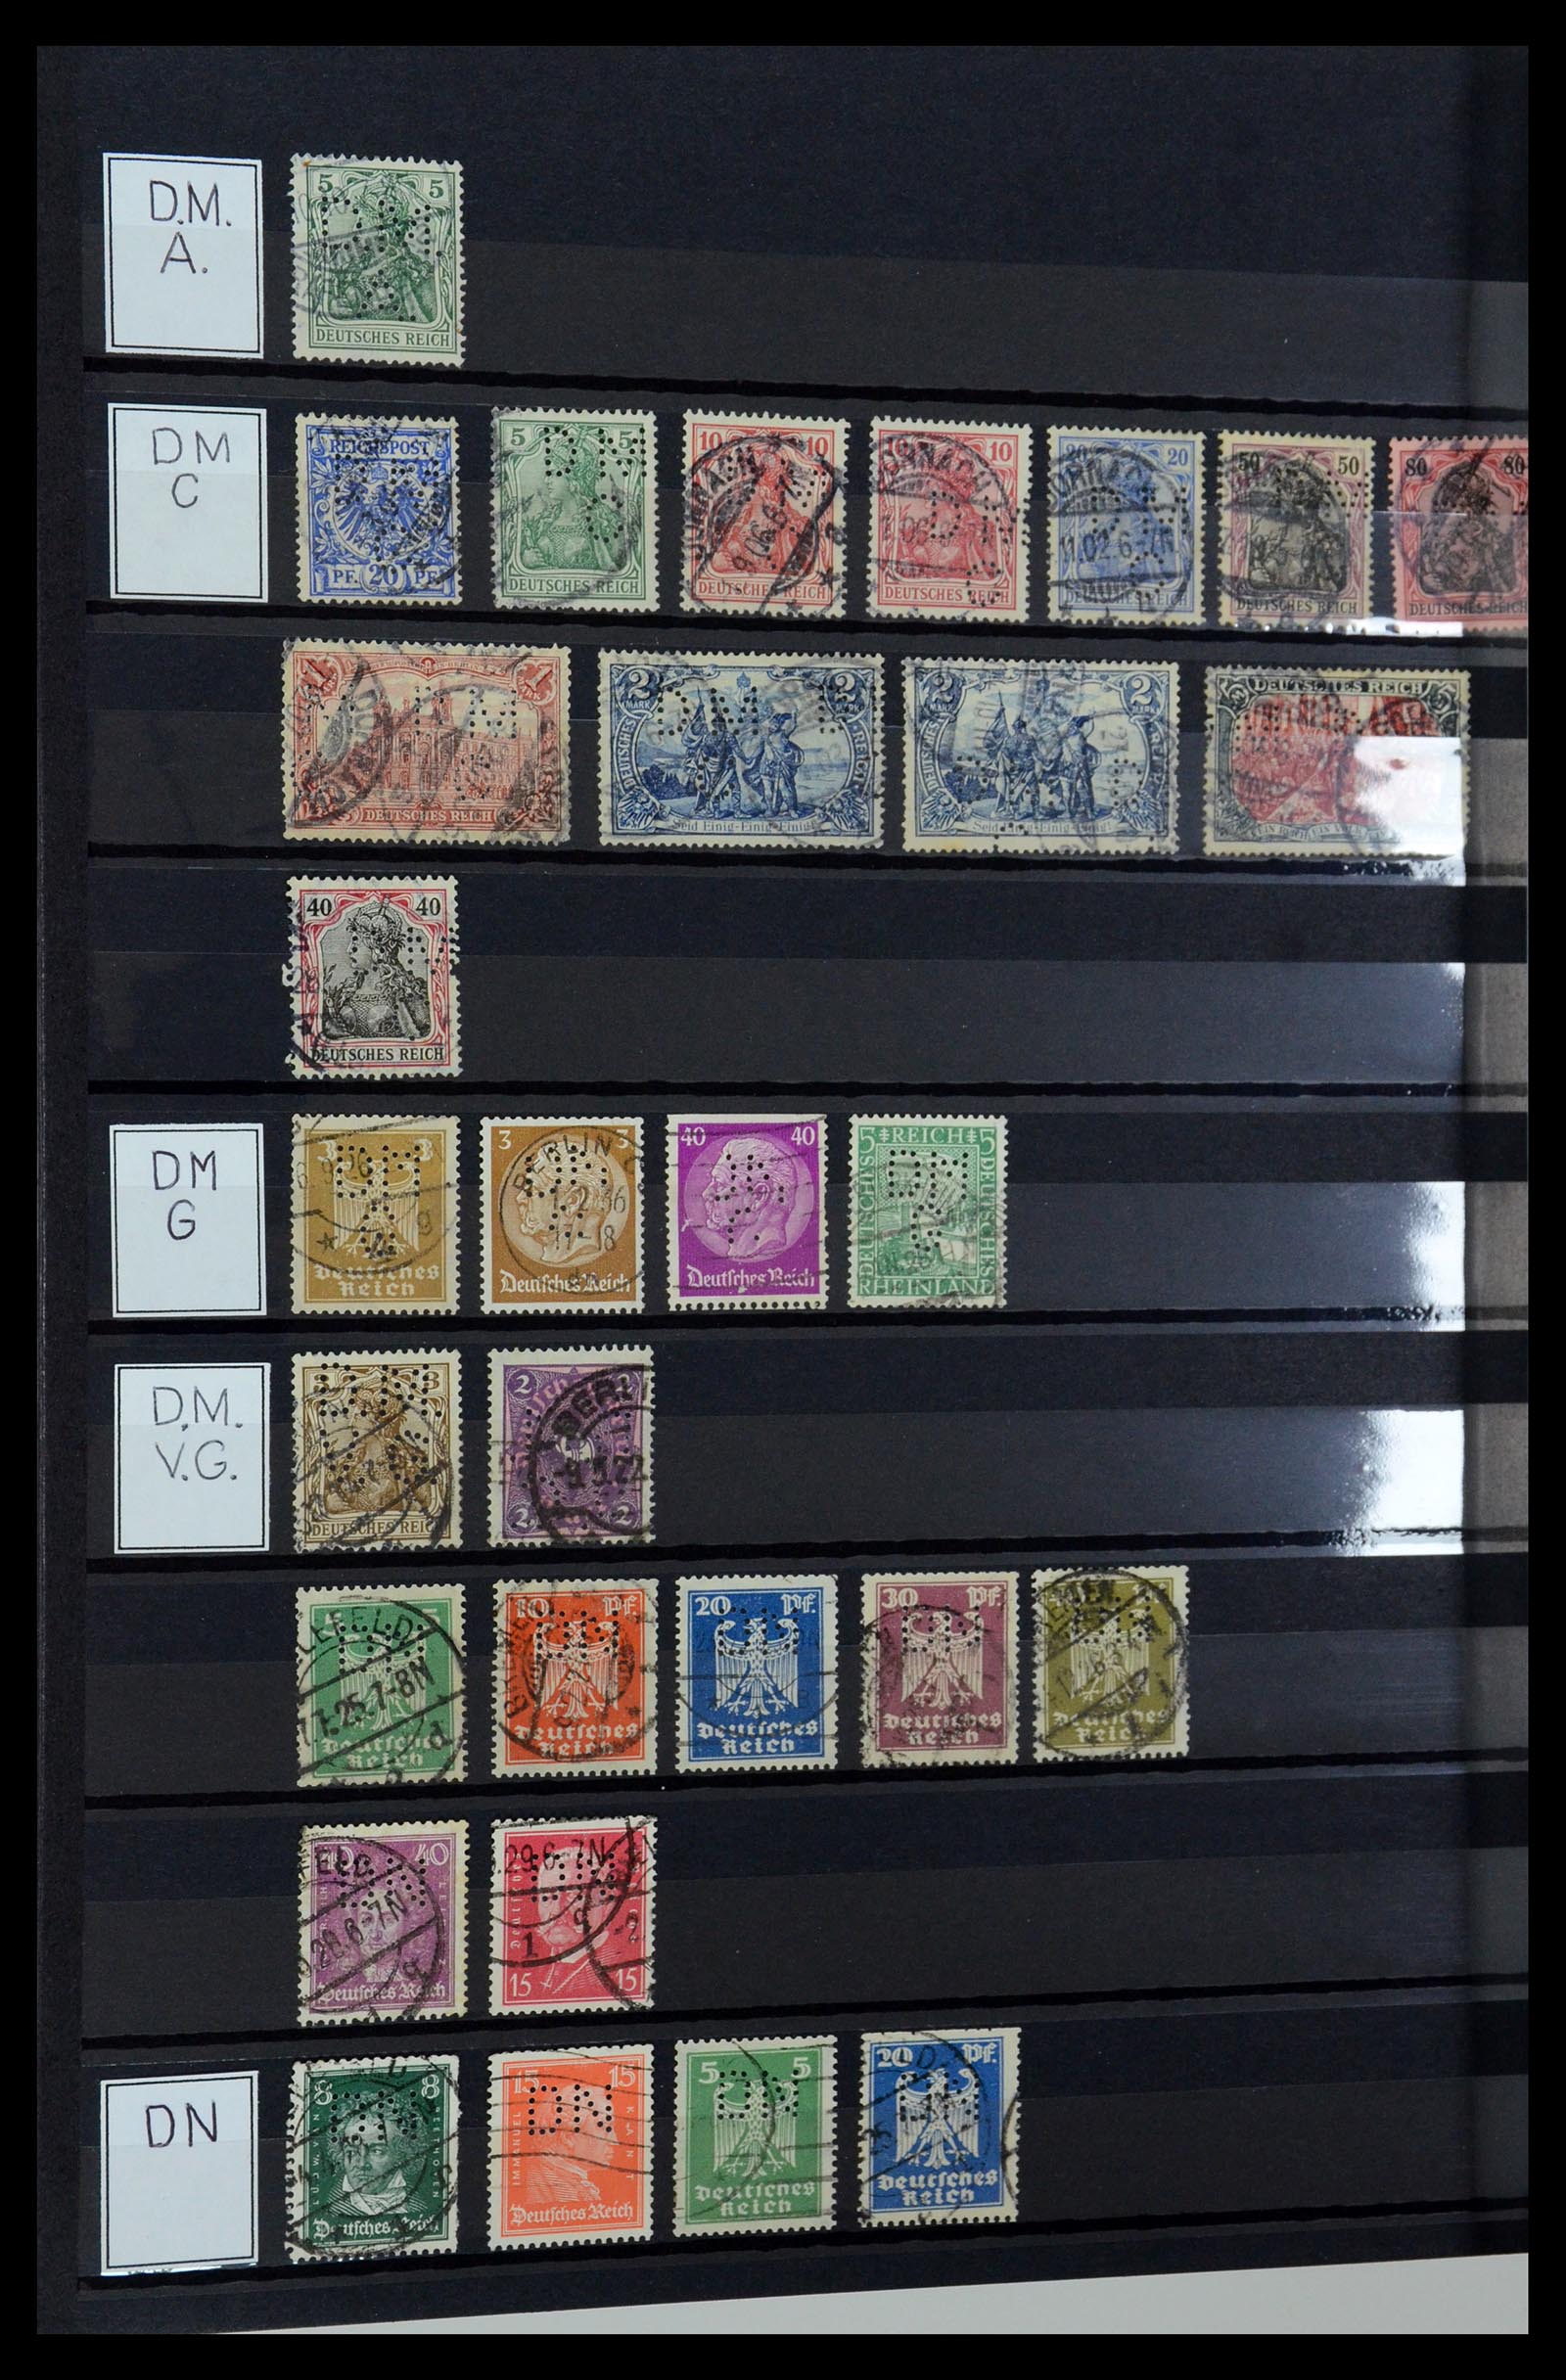 36405 100 - Stamp collection 36405 German Reich perfins 1880-1945.